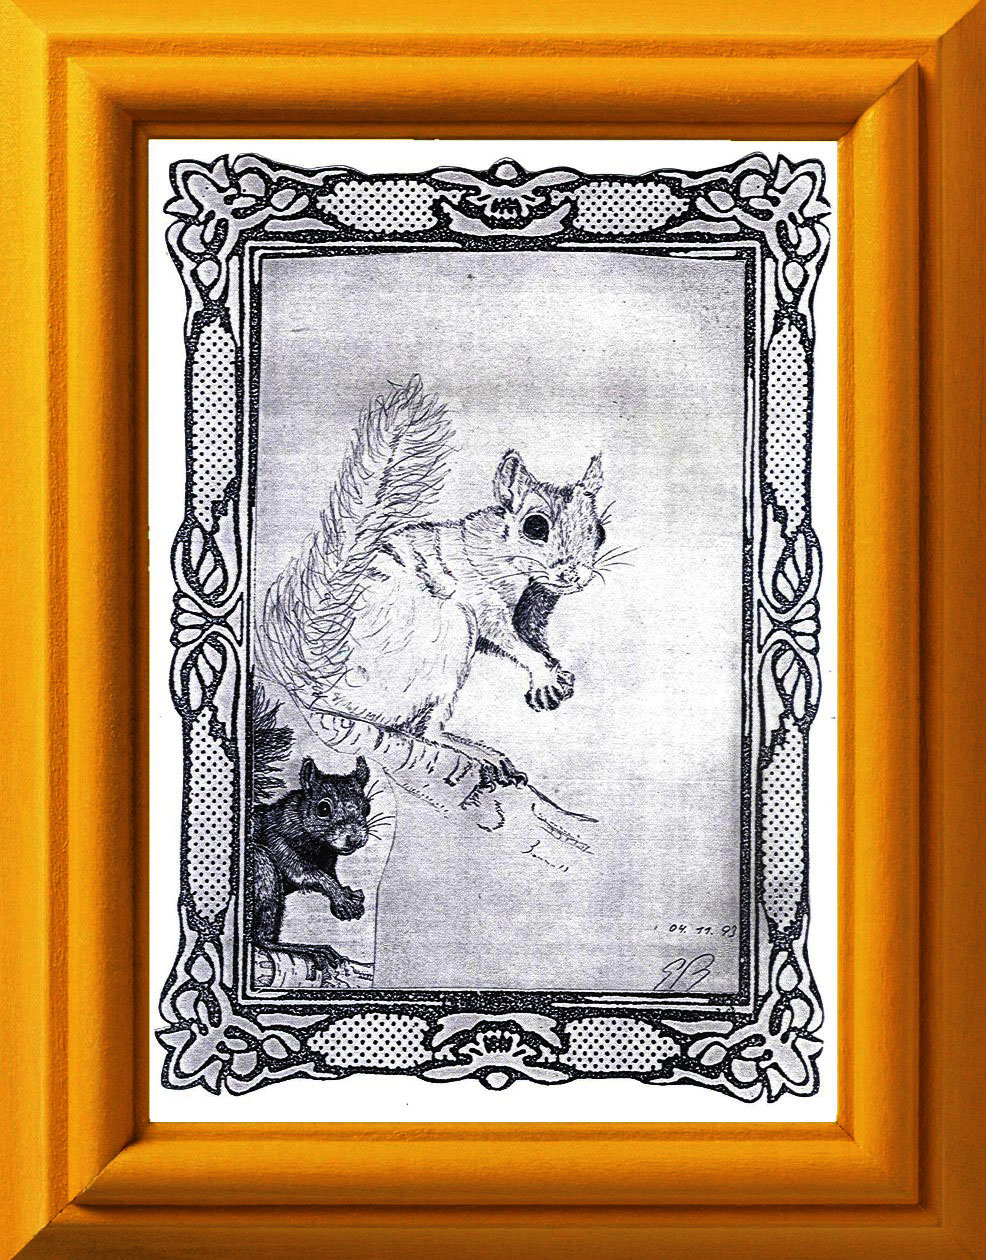 Bleistift-Zeichnung by Baeredel "Eichhörnchen" nach einem  Zeitungsbildchen - Ausschnitt